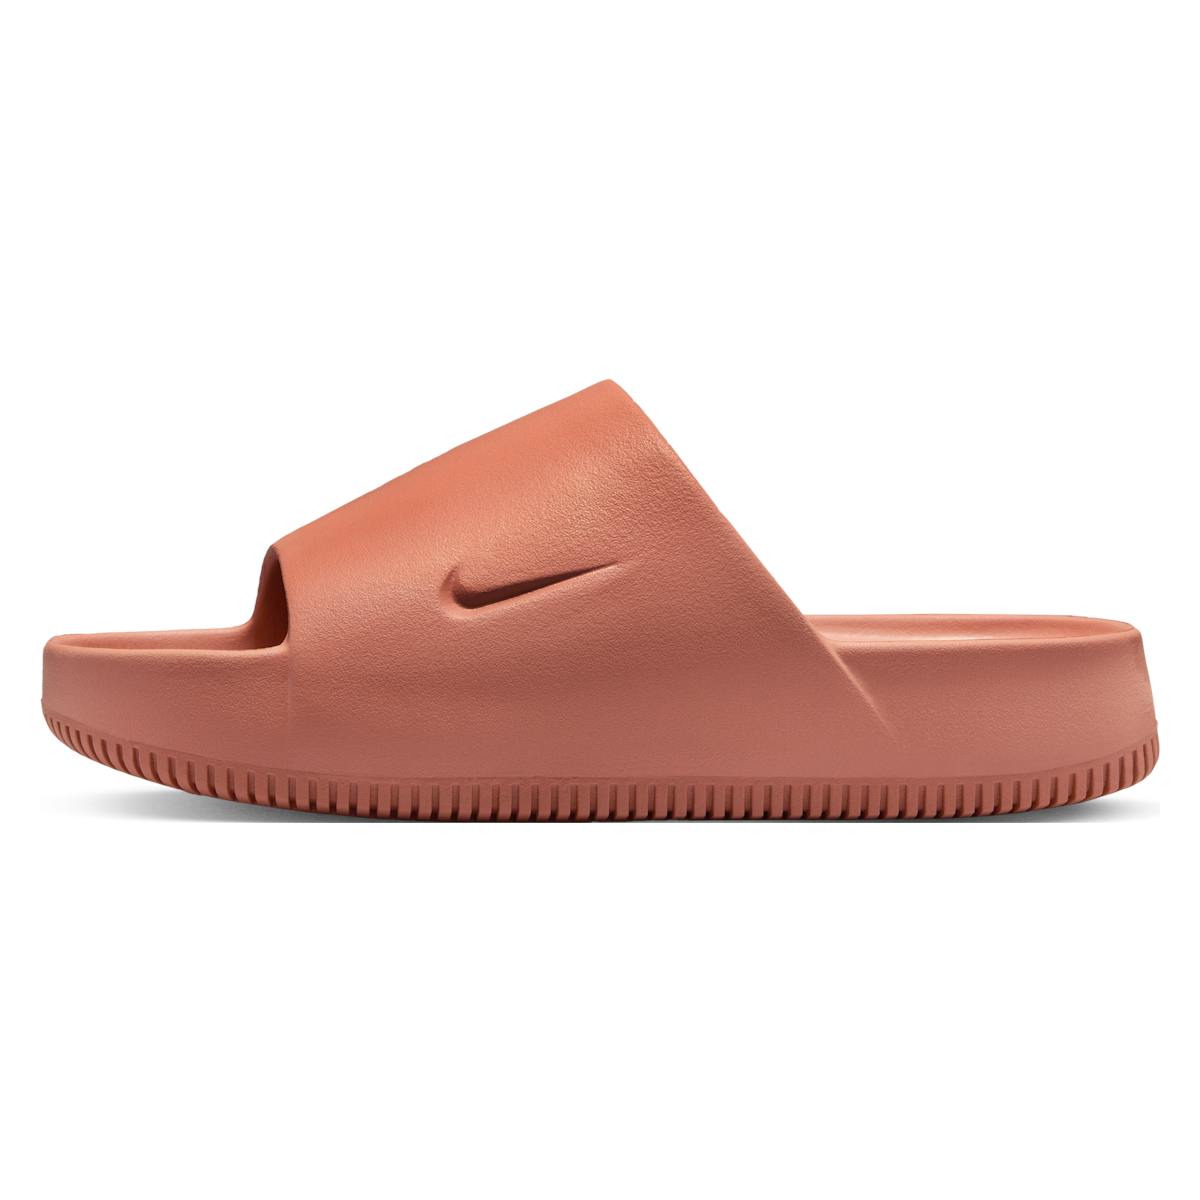 Nike Calm Slippers "Terra Blush"